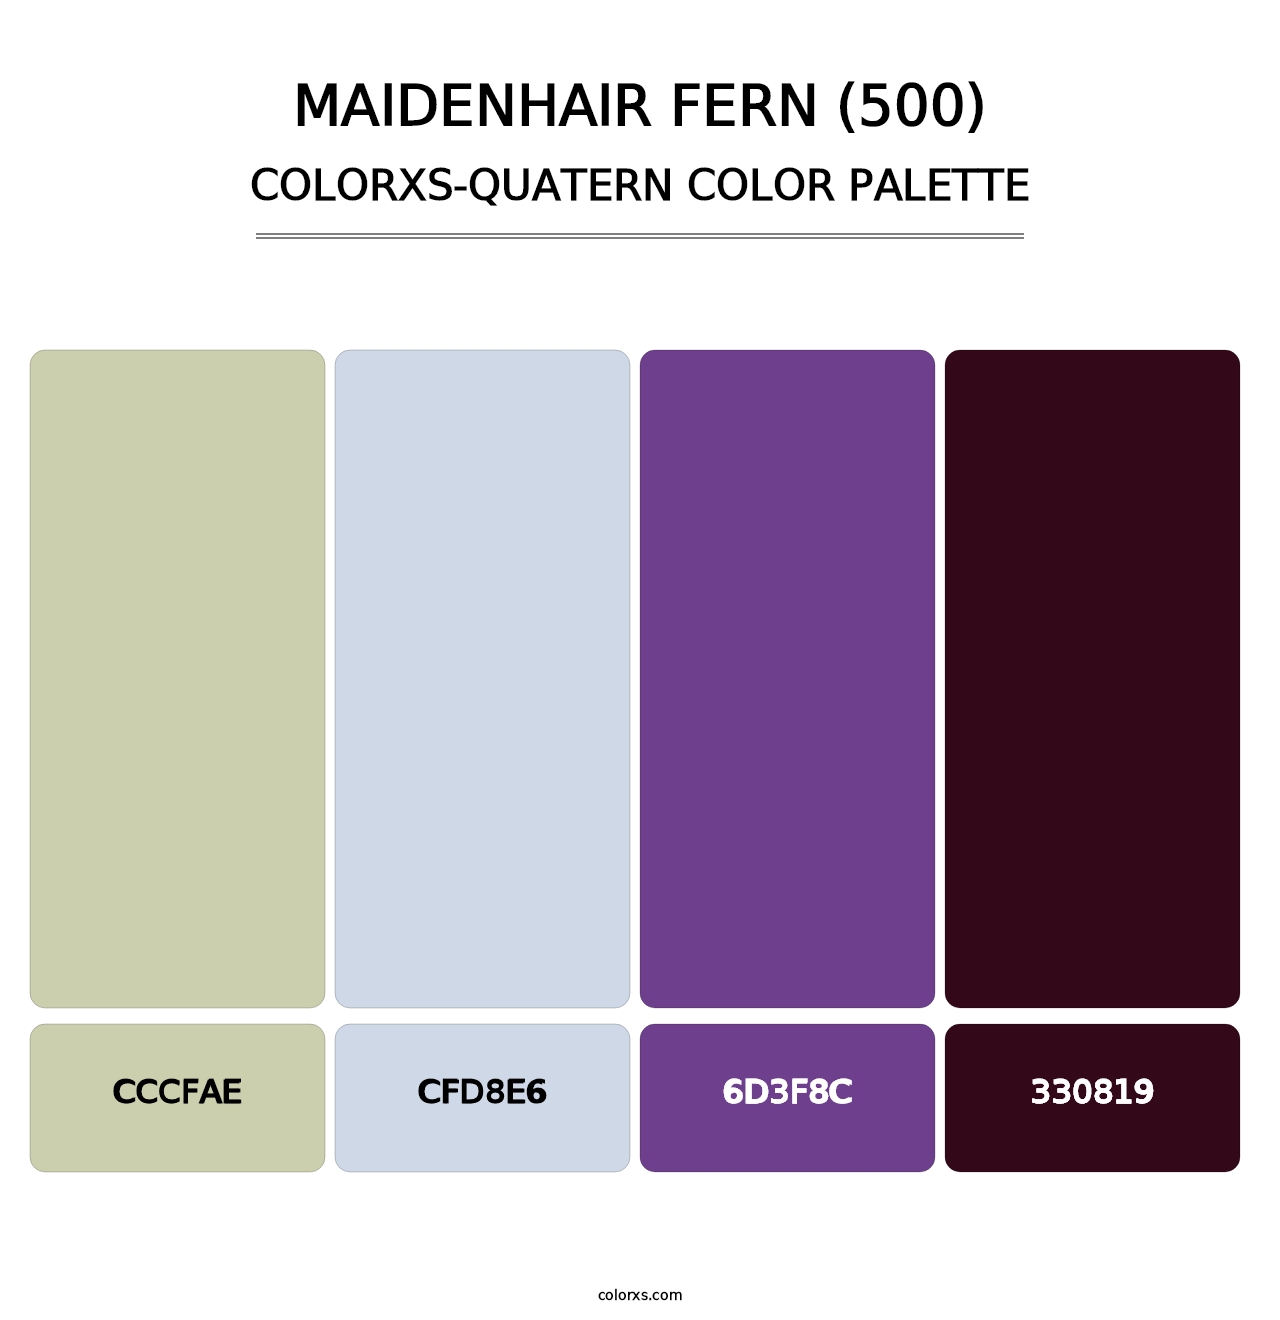 Maidenhair Fern (500) - Colorxs Quatern Palette